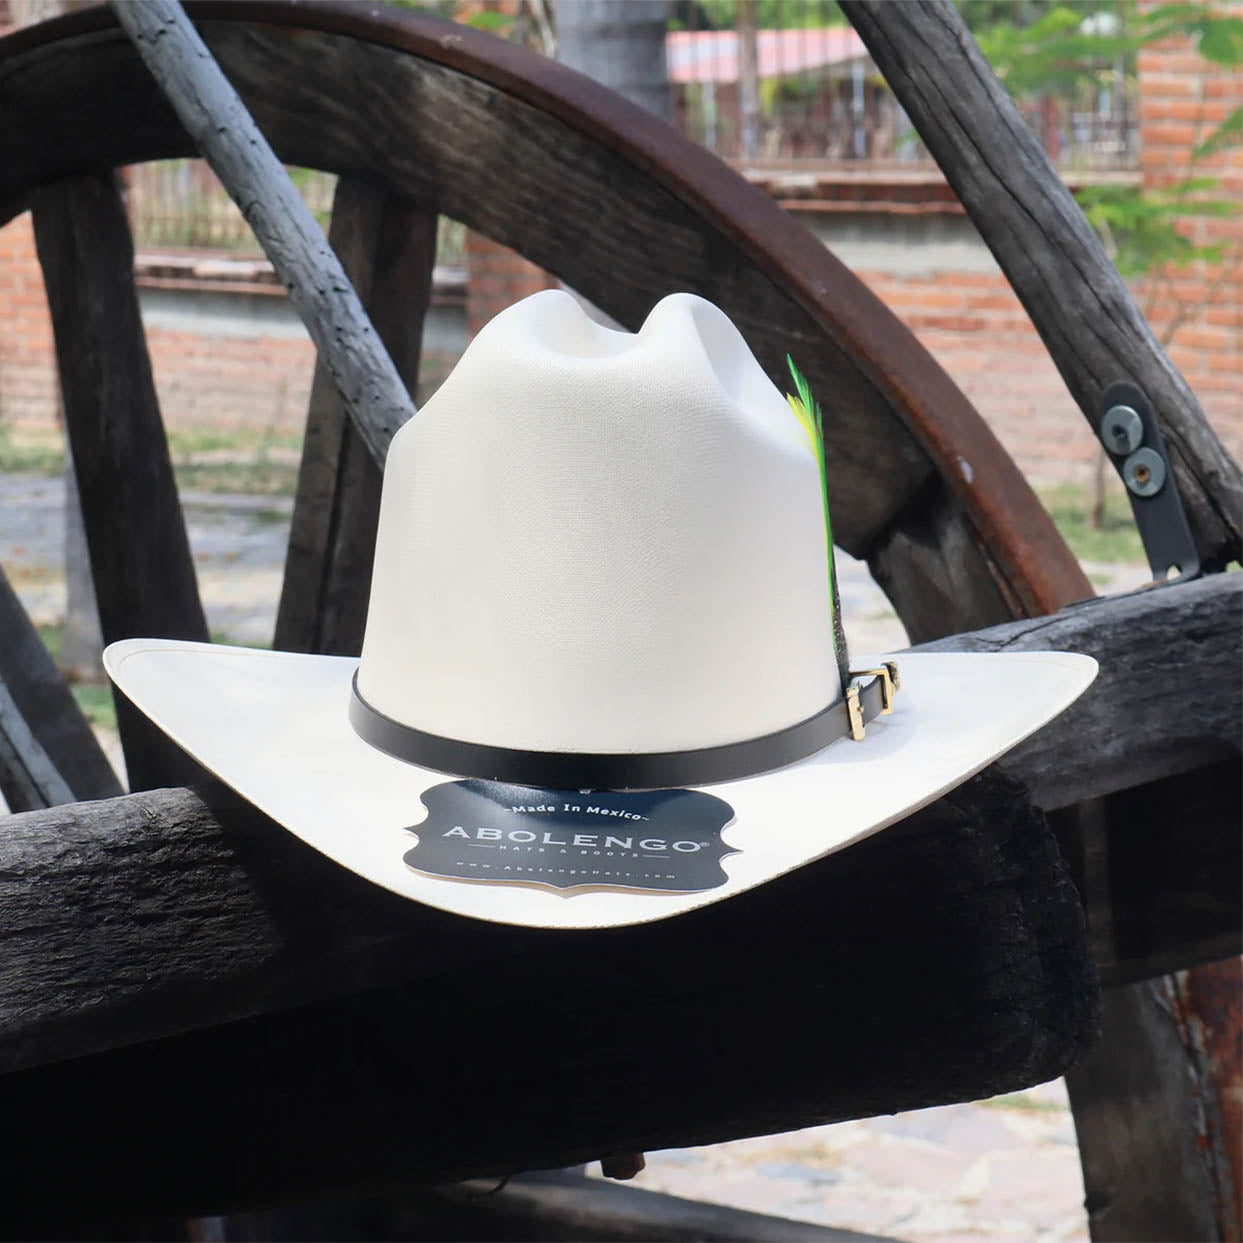 Image of Abolengo 5,000x Rancheron Los Dos Carnales Cowboy Hat outside